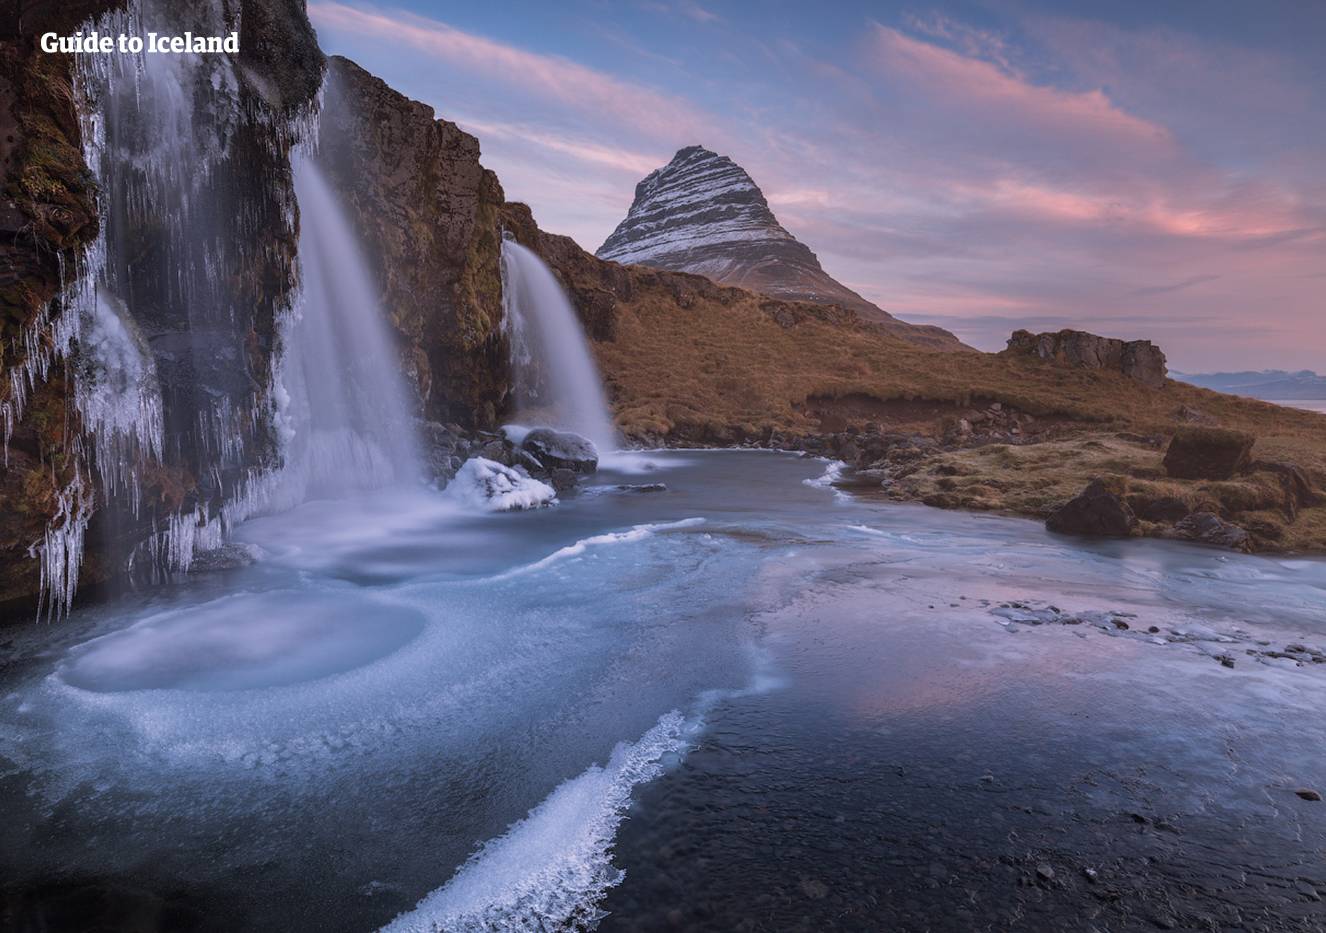 Kirkjufellsfoss to oszałamiający wodospad leżący obok słynnej góry Kirkjufell w zachodniej Islandii.